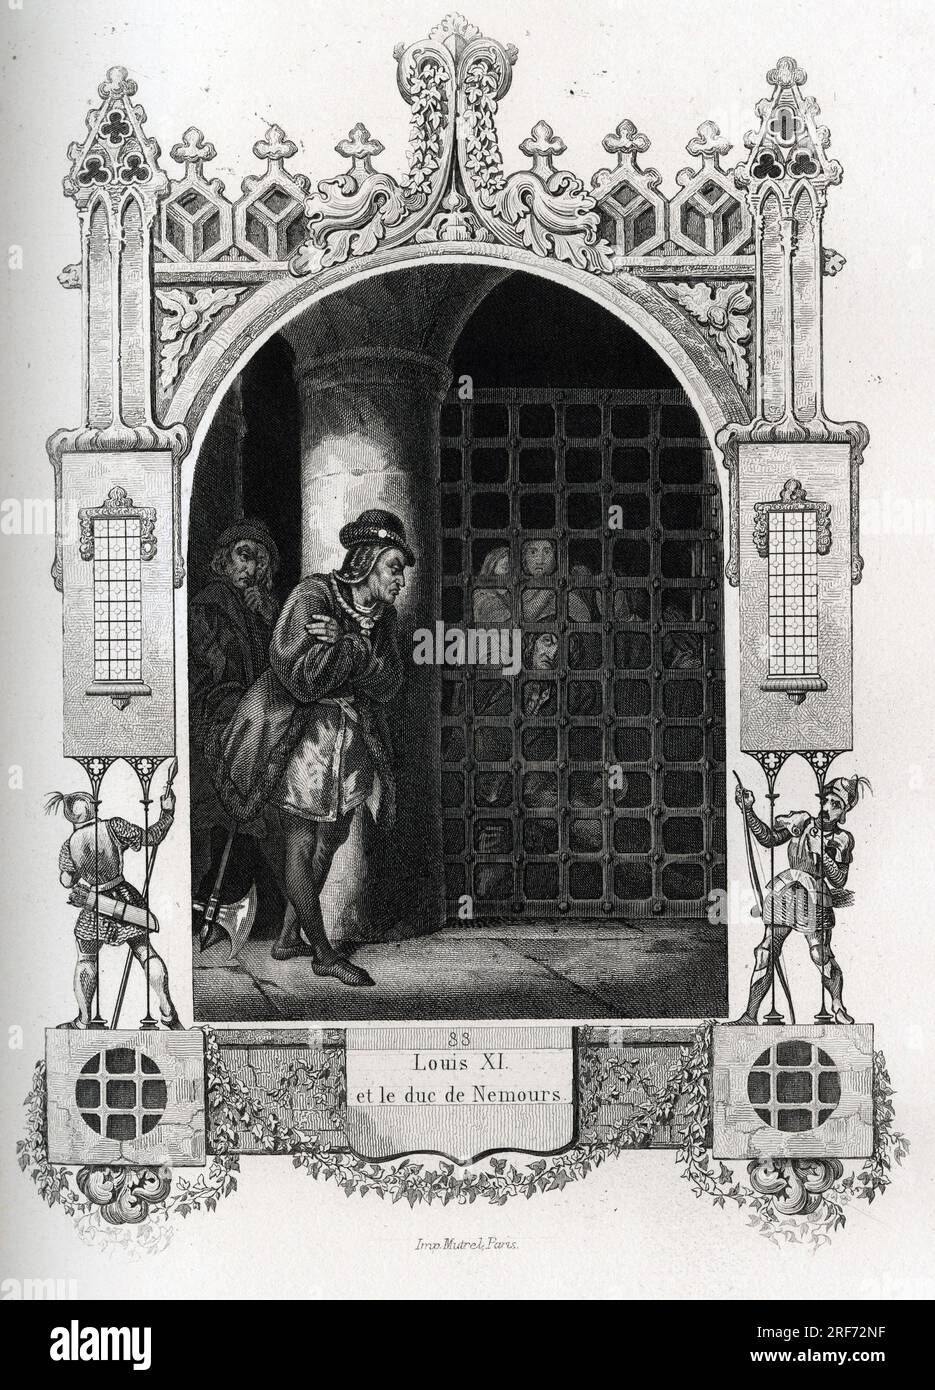 Louis XI (1423-1483) et Jacques d'Armagnac, duc de Nemours (1468-1477). Gravure pour illustrer Histoire des papes par Maurice Lachatre (1814-1900), librairie du progres, Paris. Stock Photo